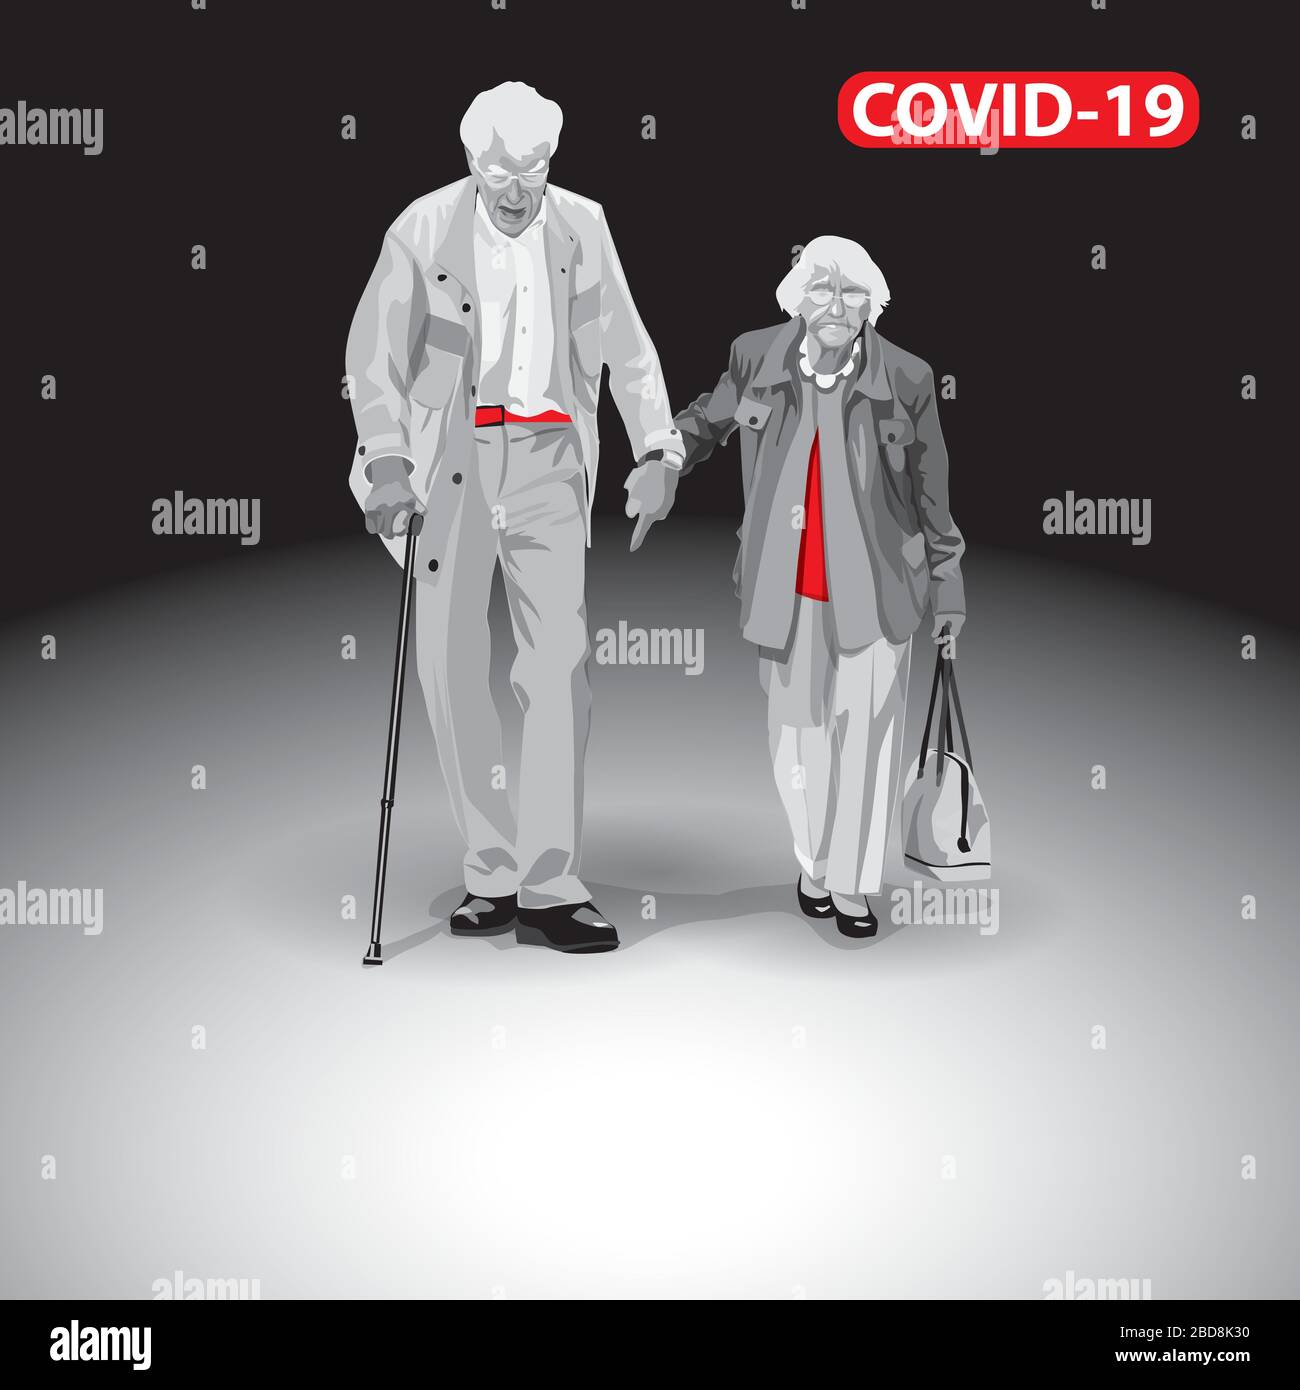 Personnes âgées à risque. Coronavirus COVID-19. Principaux éléments visuels de la pandémie 2019-nCoV. Quelques personnes âgées. Les gens vont tenir les mains. Le public cible pour moi Illustration de Vecteur